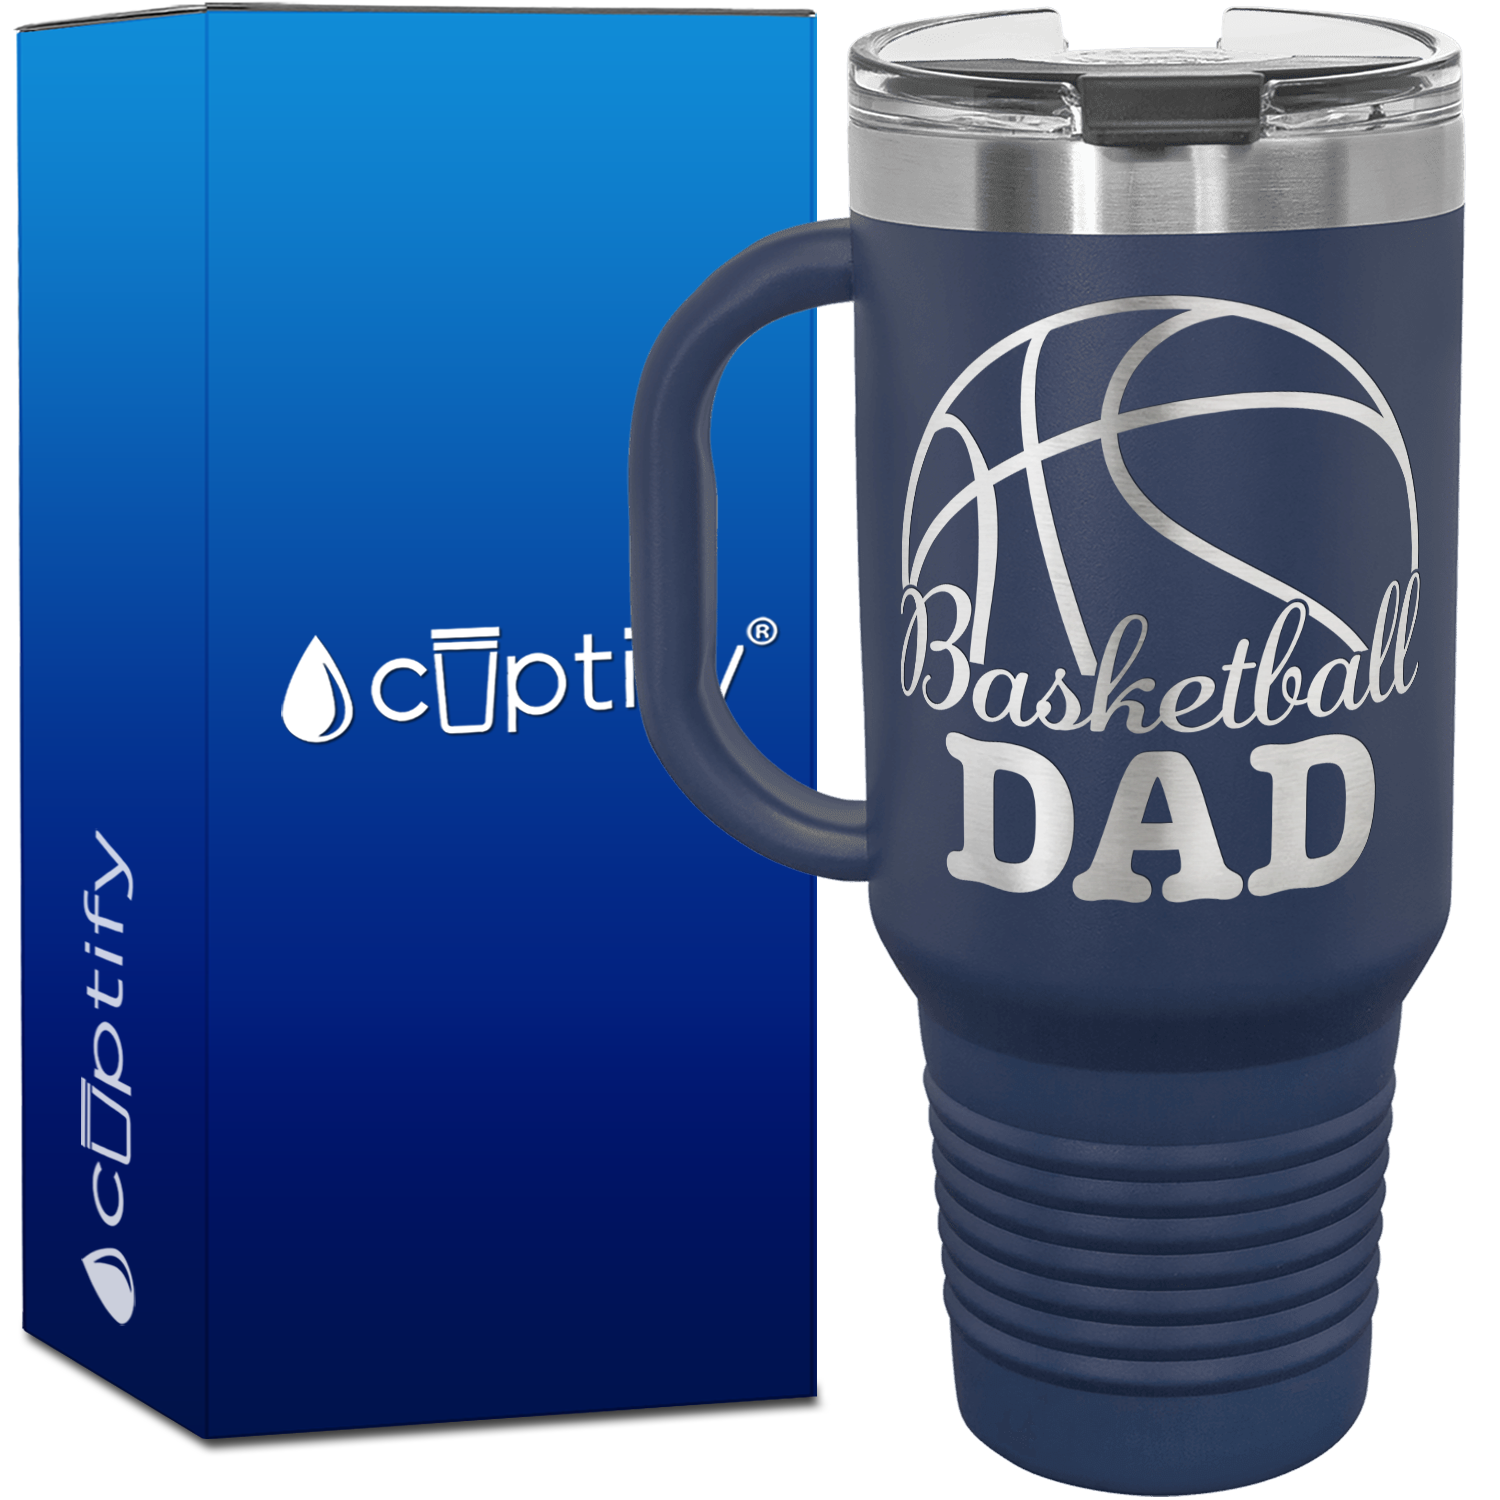 Basketball Dad 40oz Basketball Travel Mug